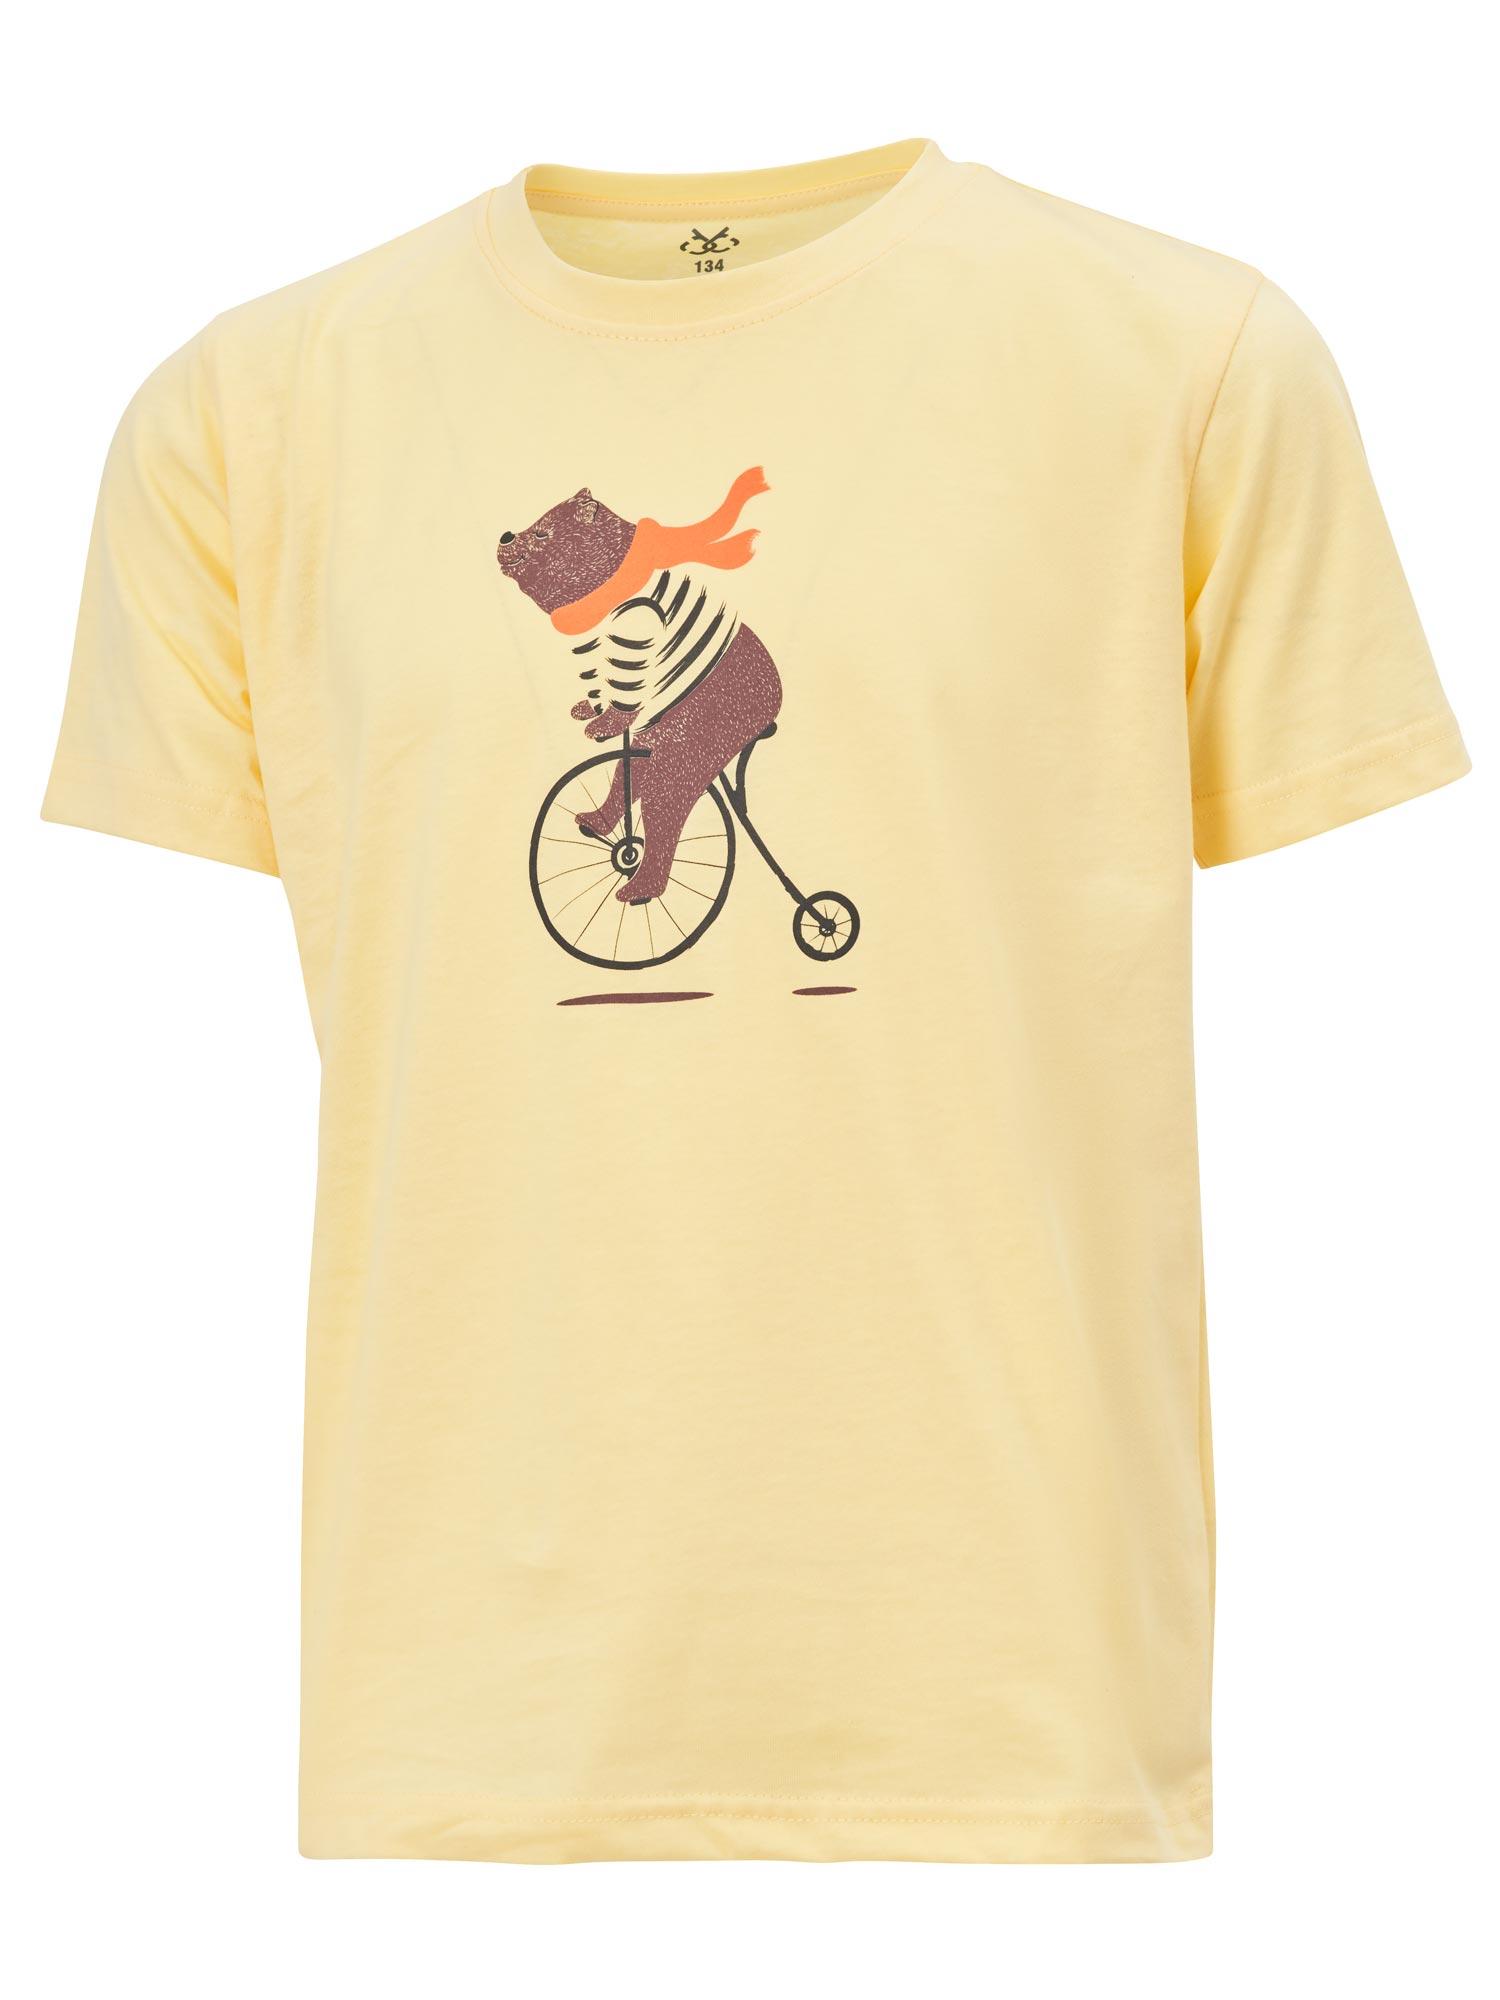 Selected image for BRILLE Majica za devojčice Bear žuta